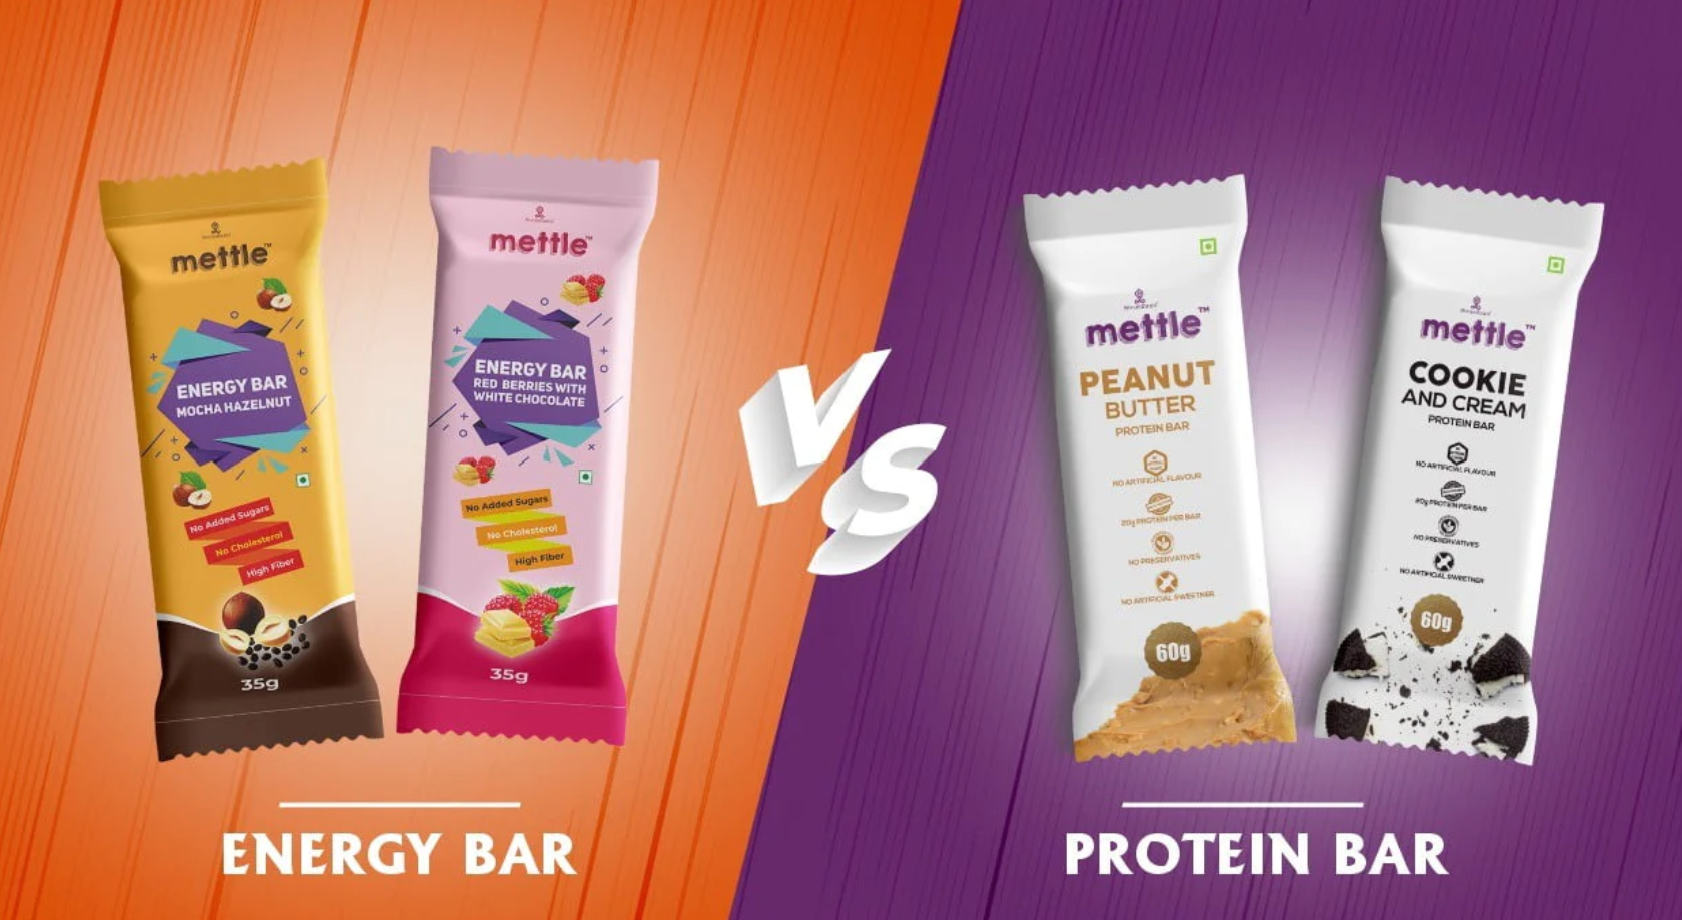 Protein Bars vs. Energy Bars